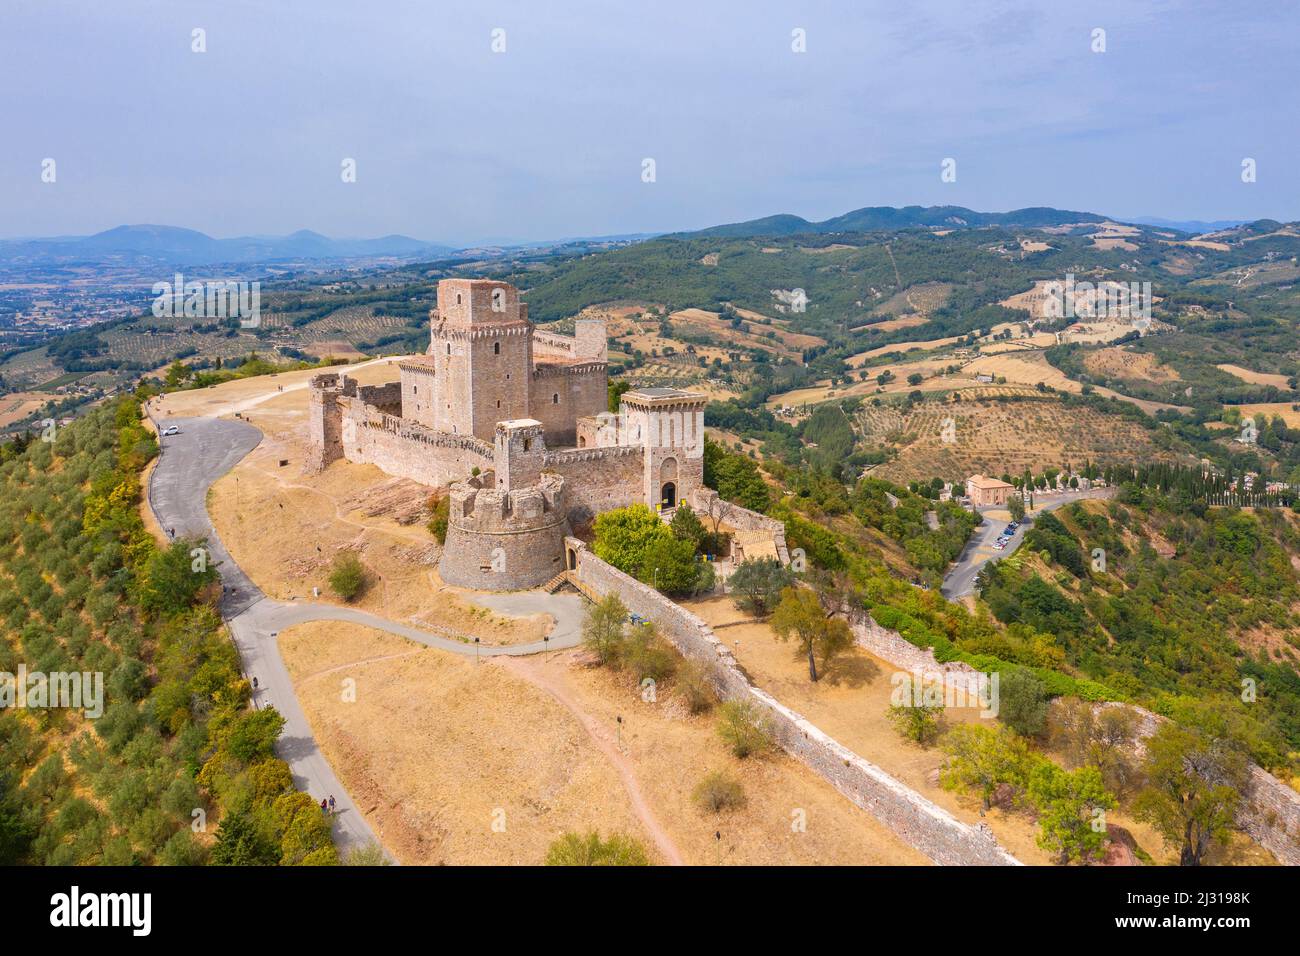 Vue aérienne du château Rocca Maggiore à Assise, province de Pérouse, Ombrie, Italie Banque D'Images